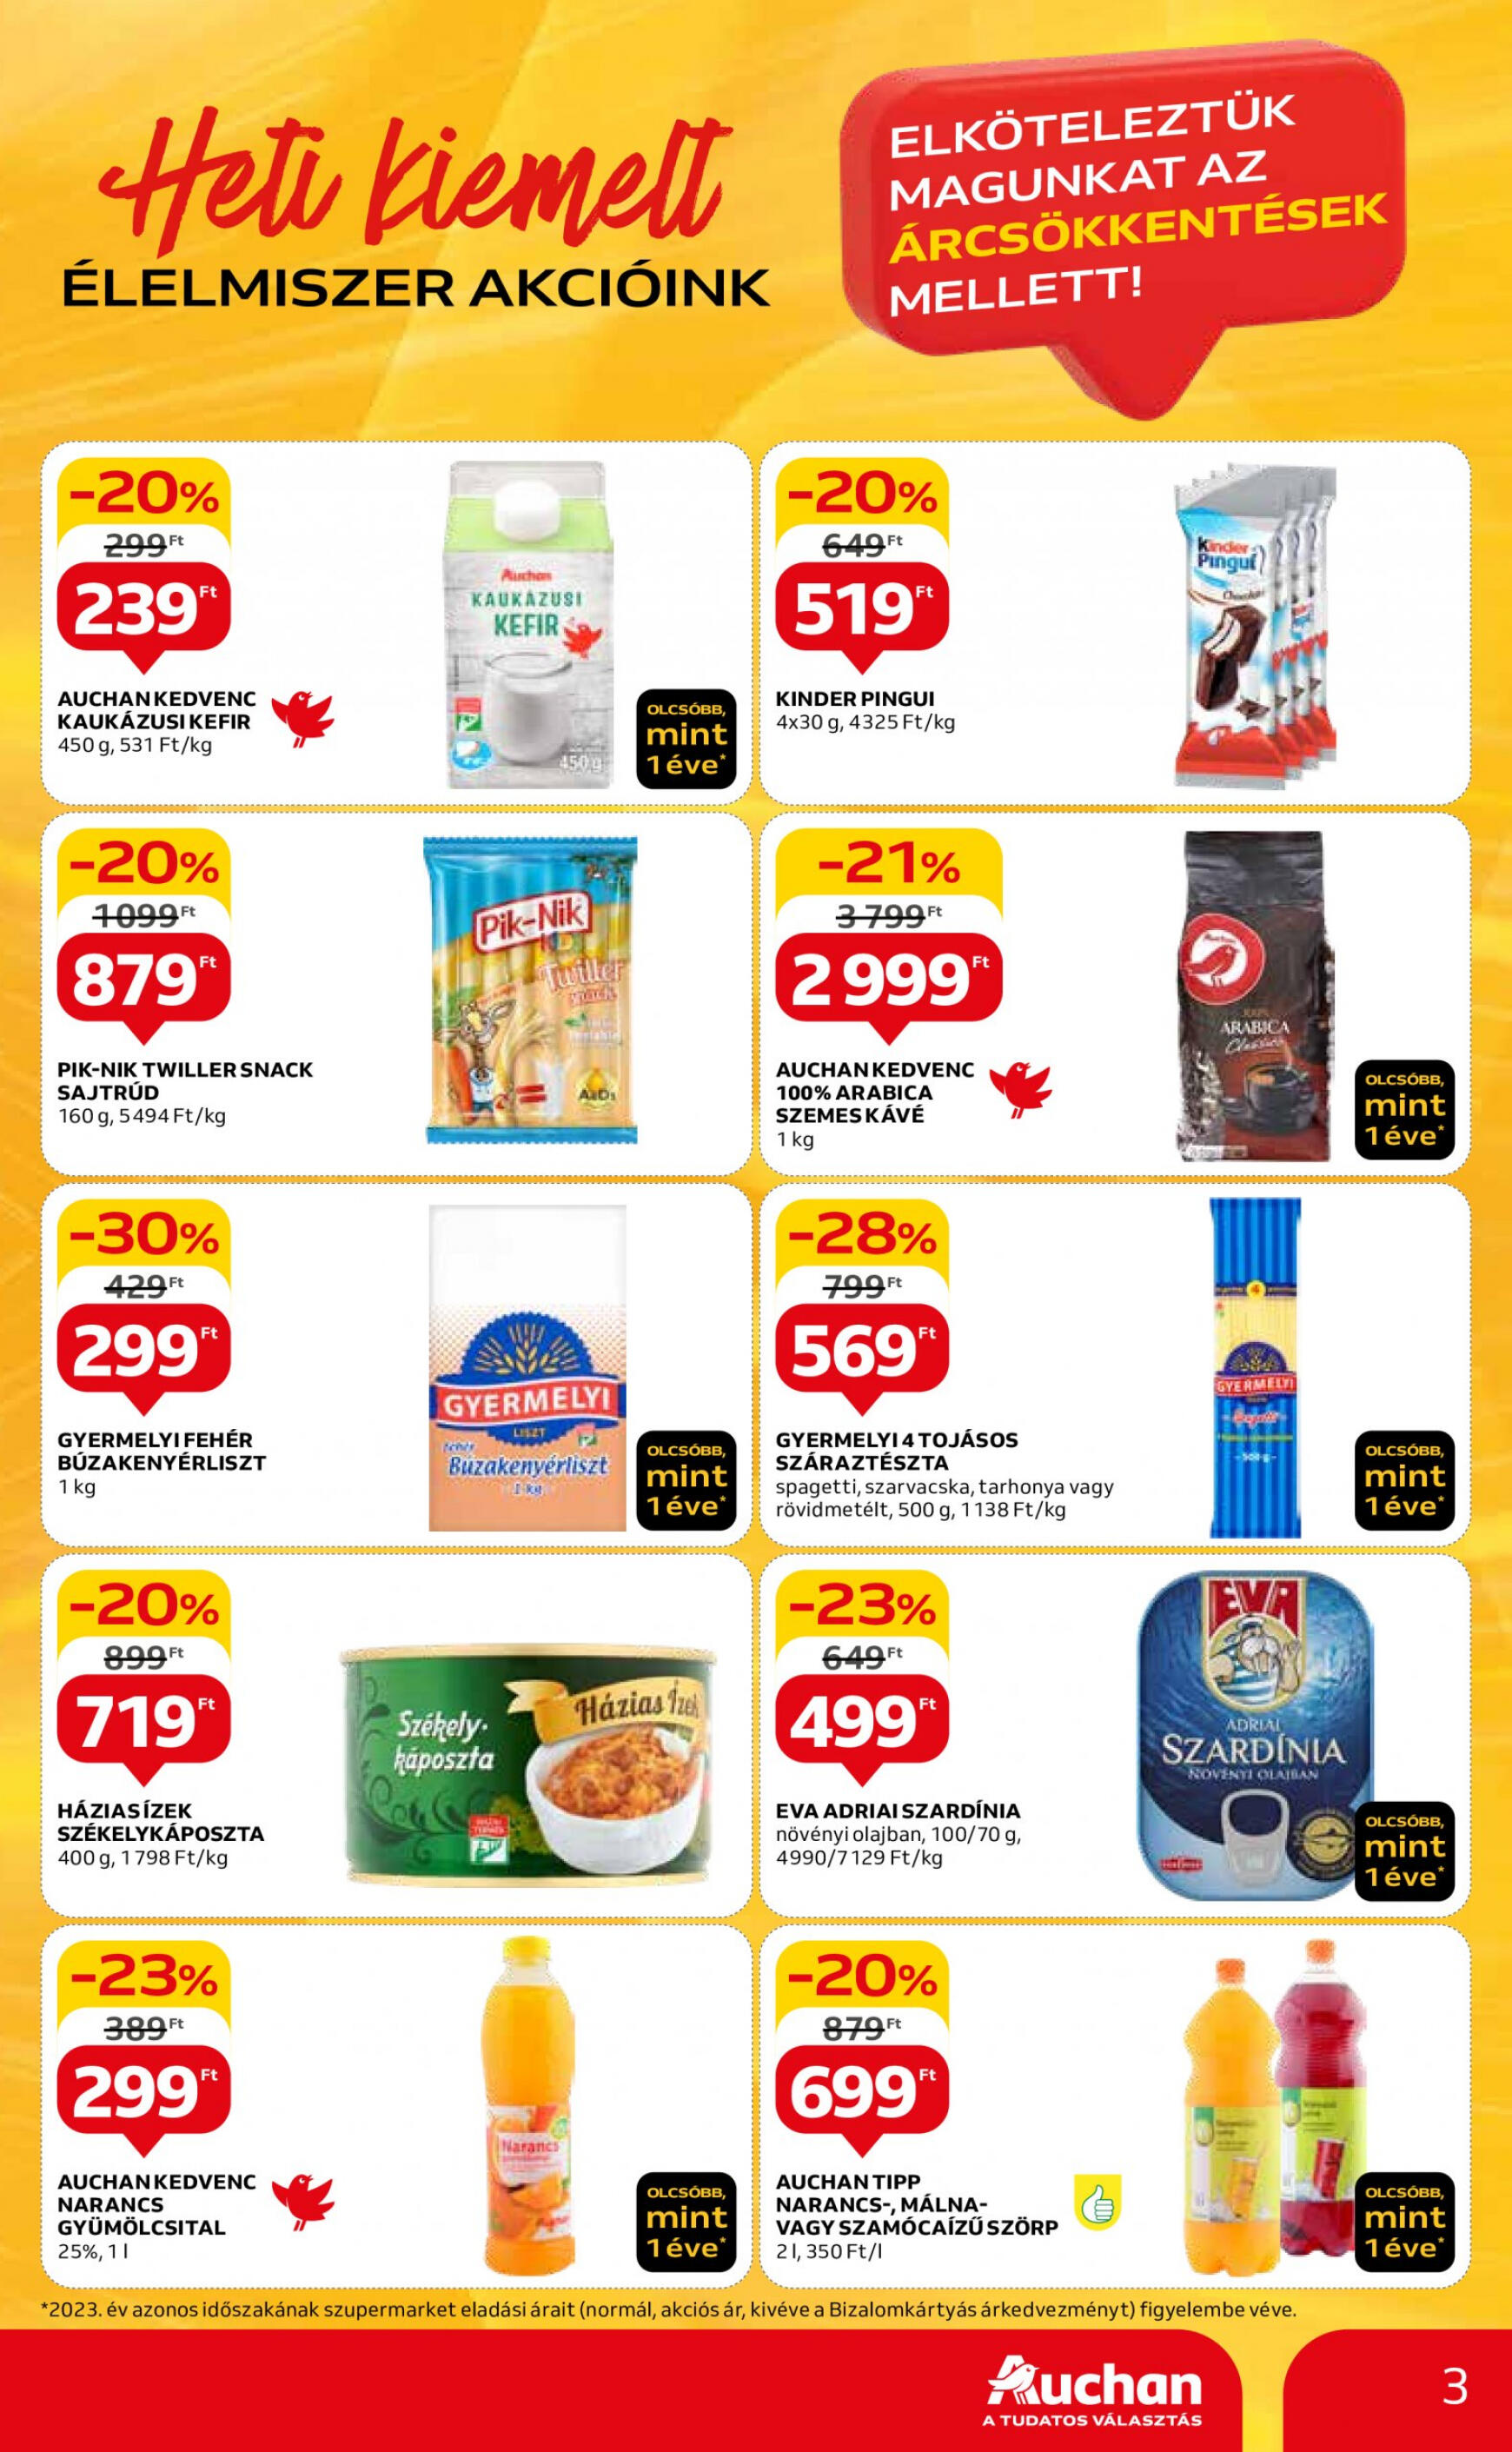 auchan - Aktuális újság Auchan szupermarket 04.18. - 04.24. - page: 3